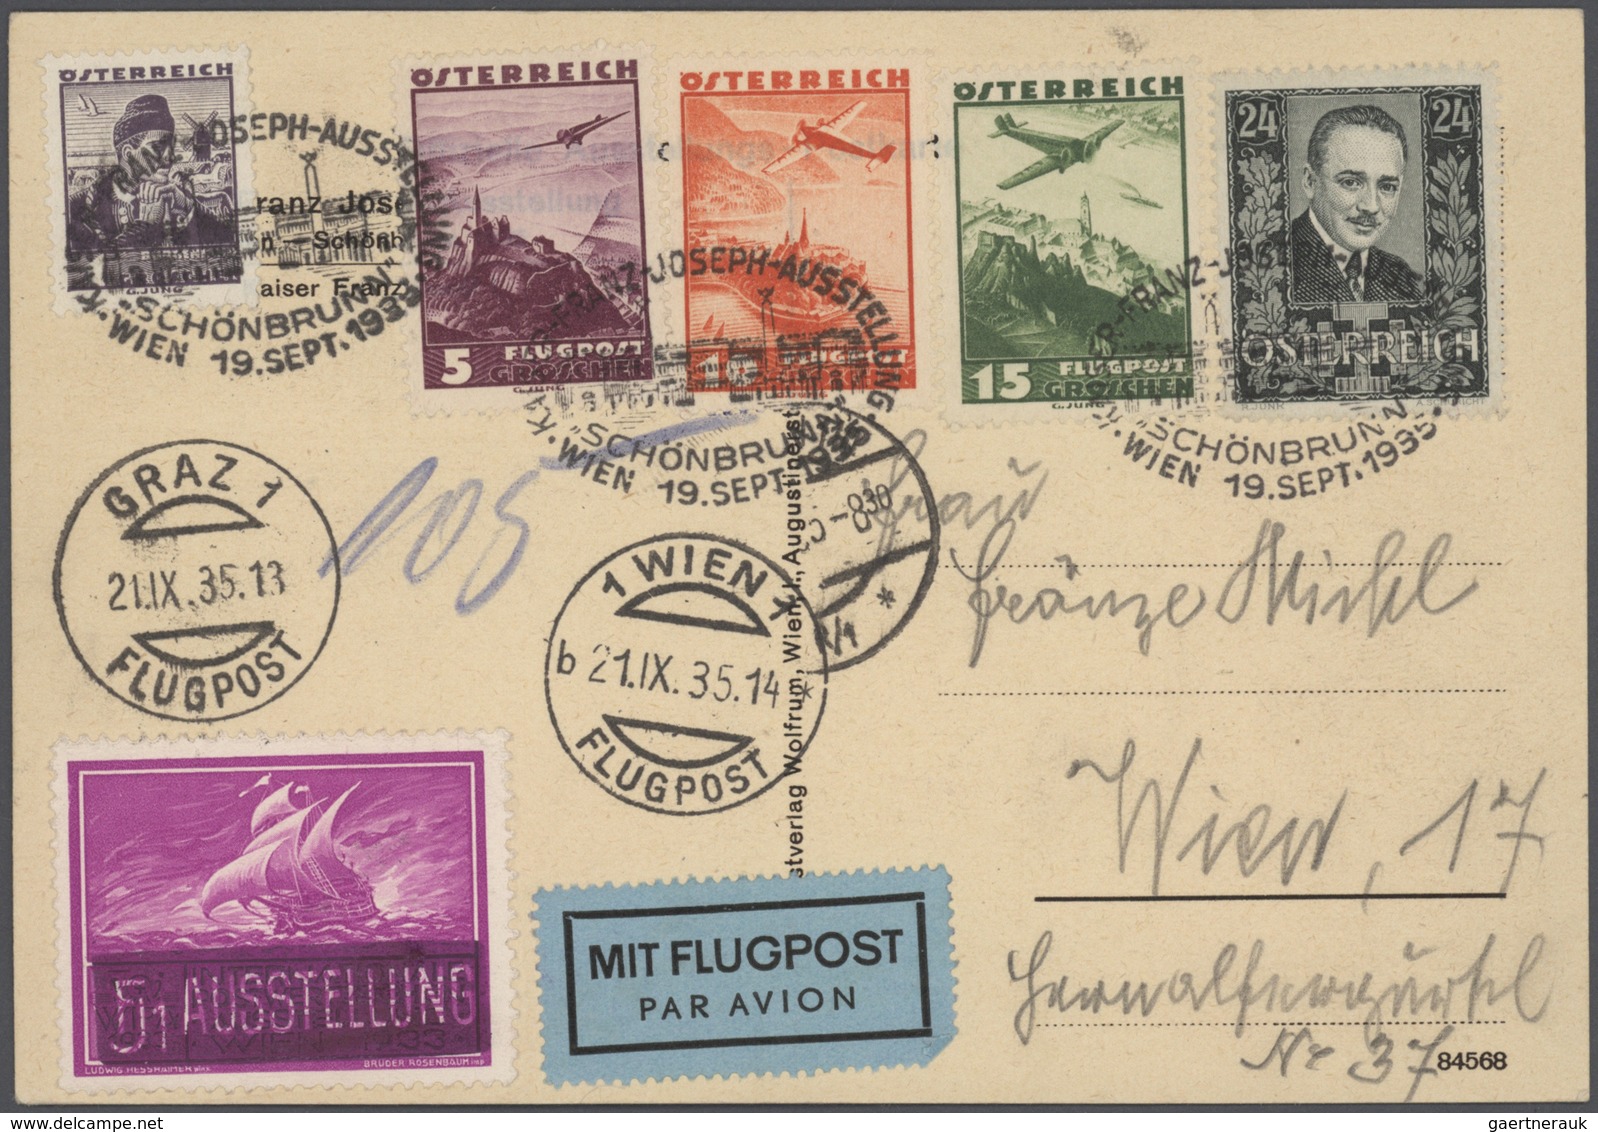 Österreich: 1850/1983, saubere Sammlung auf Albenblättern streckenweise komplett geführt, ab einem g